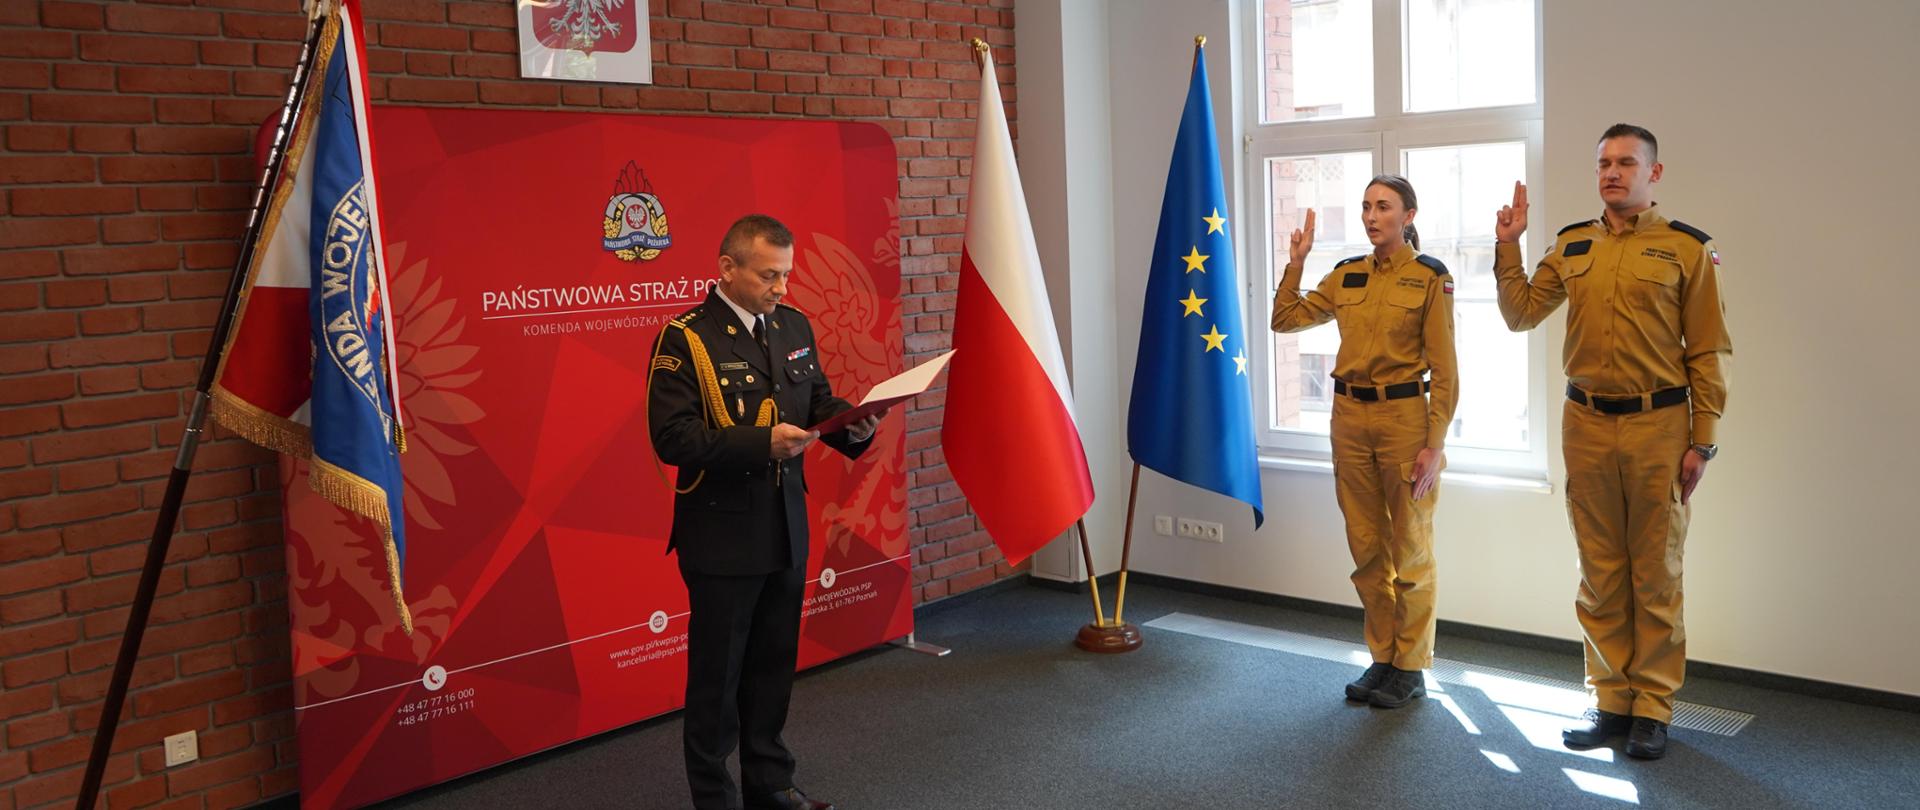 Ślubowanie funkcjonariuszy PSP w Komendzie Wojewódzkiej PSP w Poznaniu